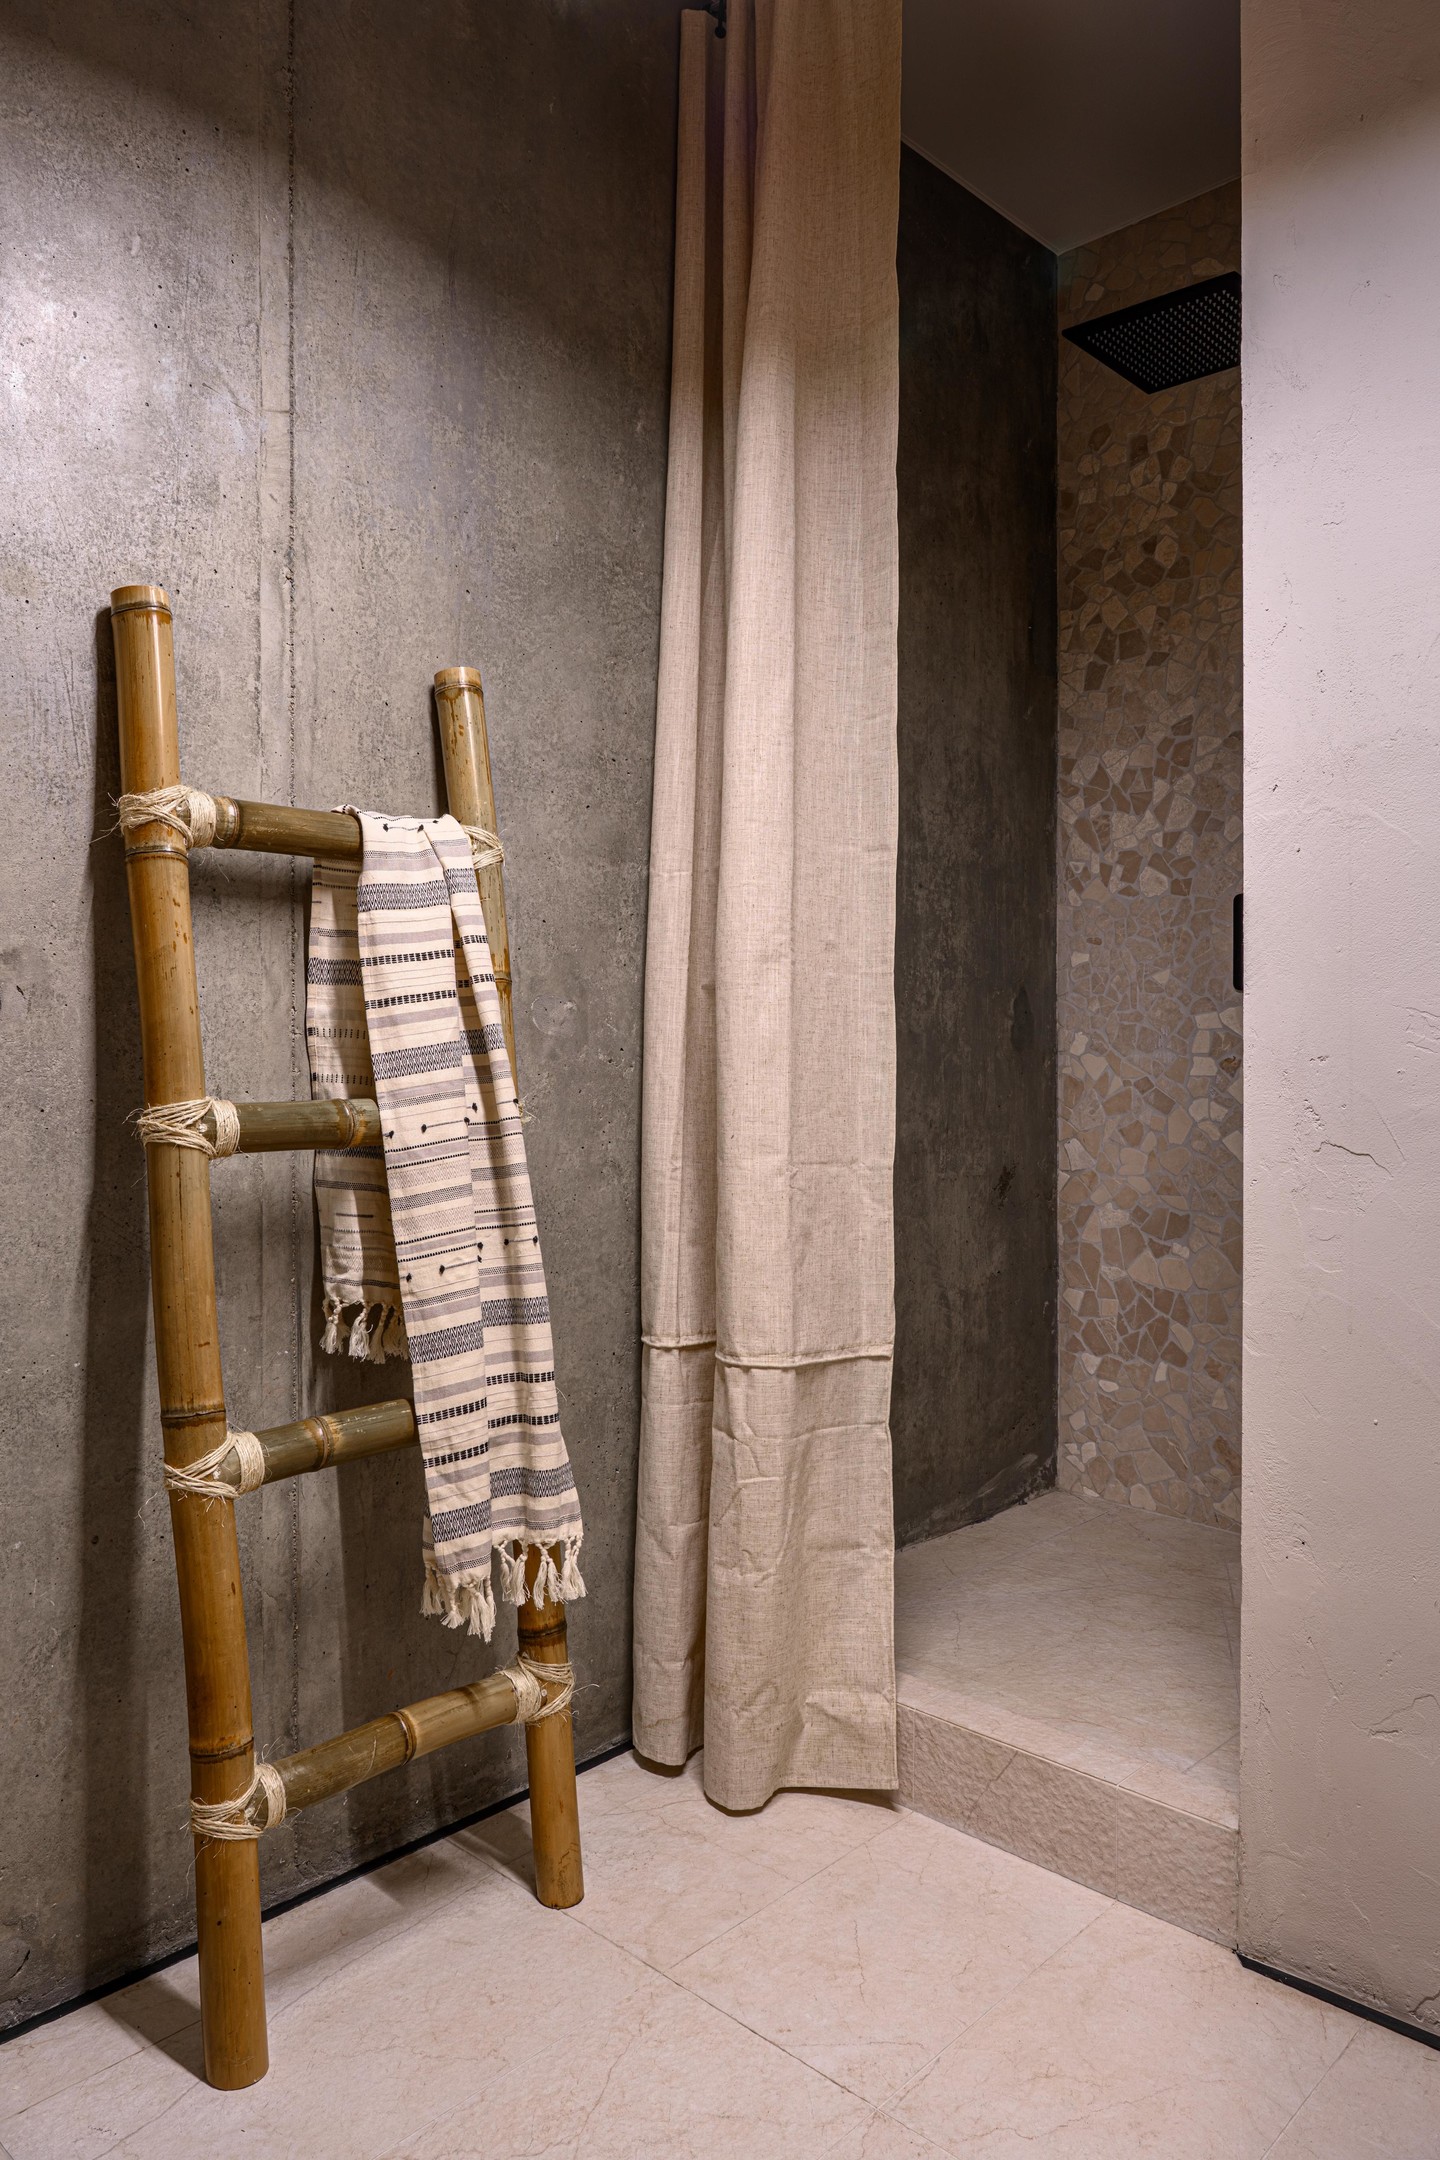 Chiếc thang treo khăn trong nhà vệ sinh và phòng tắm này cũng được làm theo đơn đặt hàng từ phác thảo của NTK nội thất, từ những ống tre và sợi dây thừng thô mộc, dĩ nhiên là rất khó để đụng hàng với bất kỳ ai.